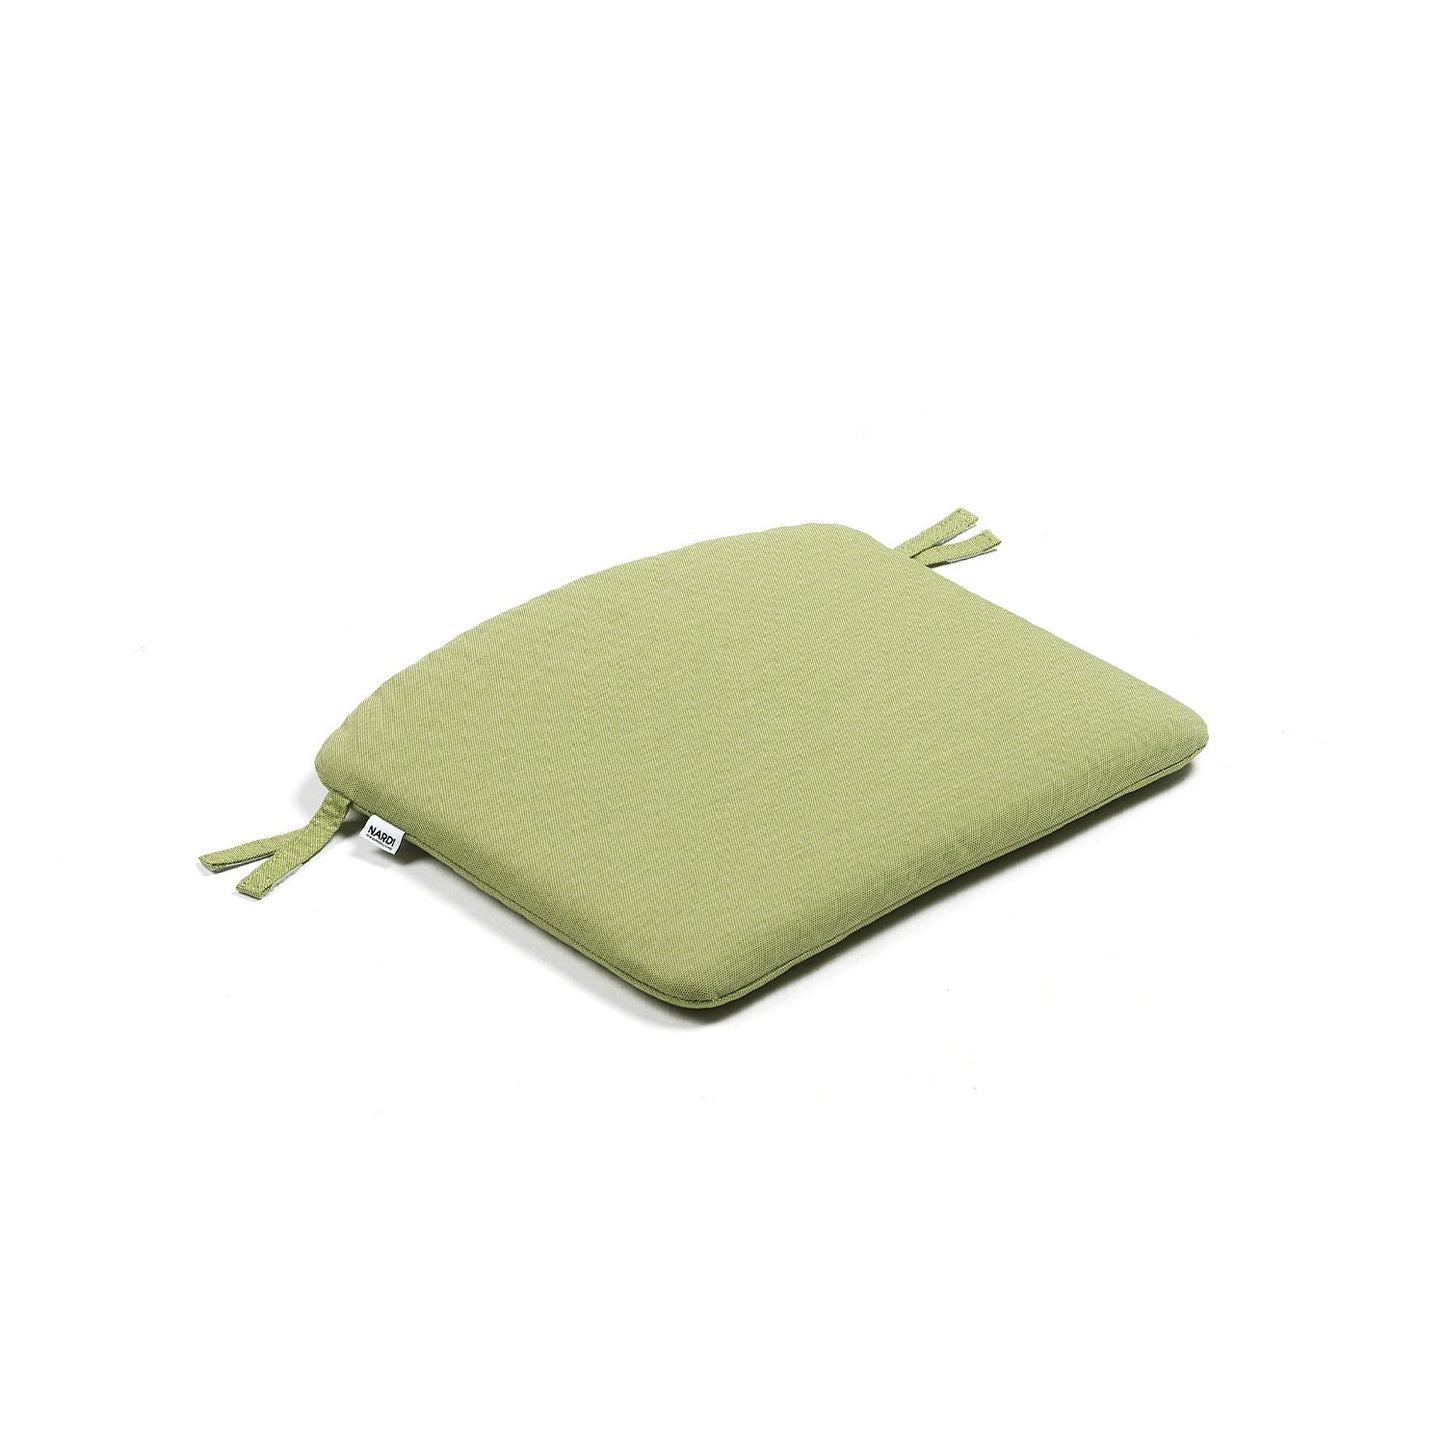 Doga Armless Cushion By Nardi